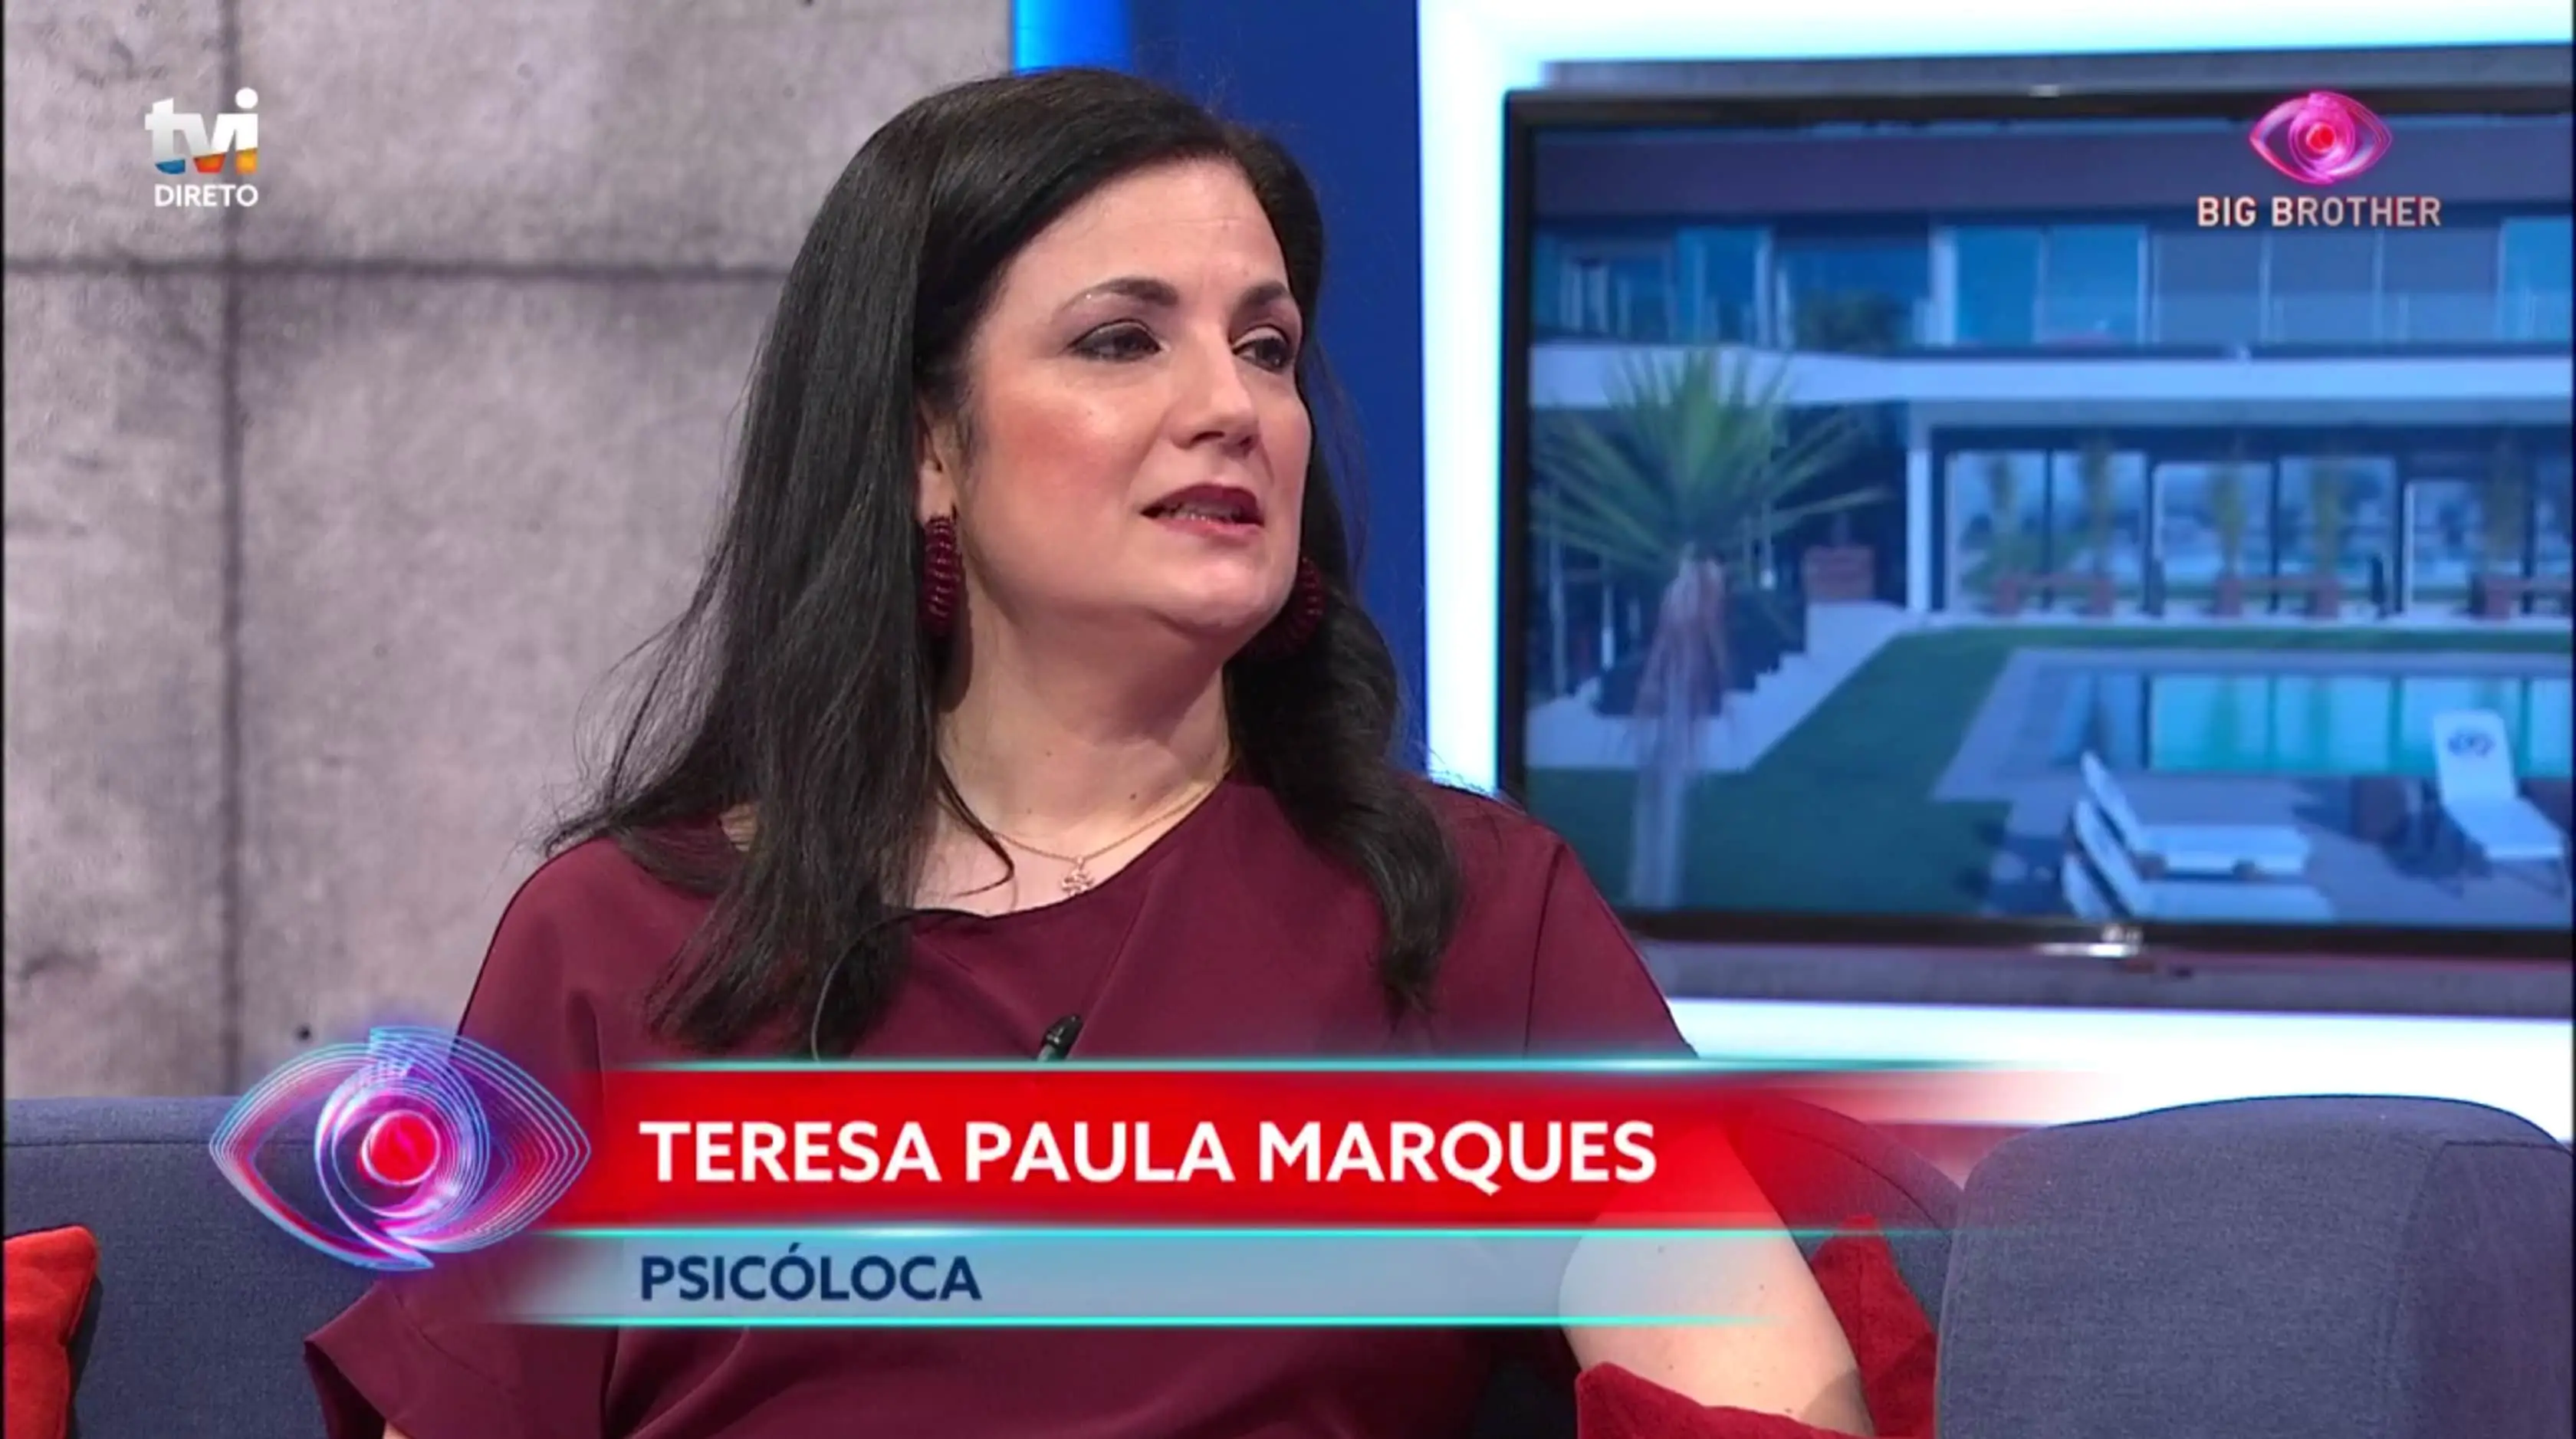 Teresa Paula Marques Big Brother